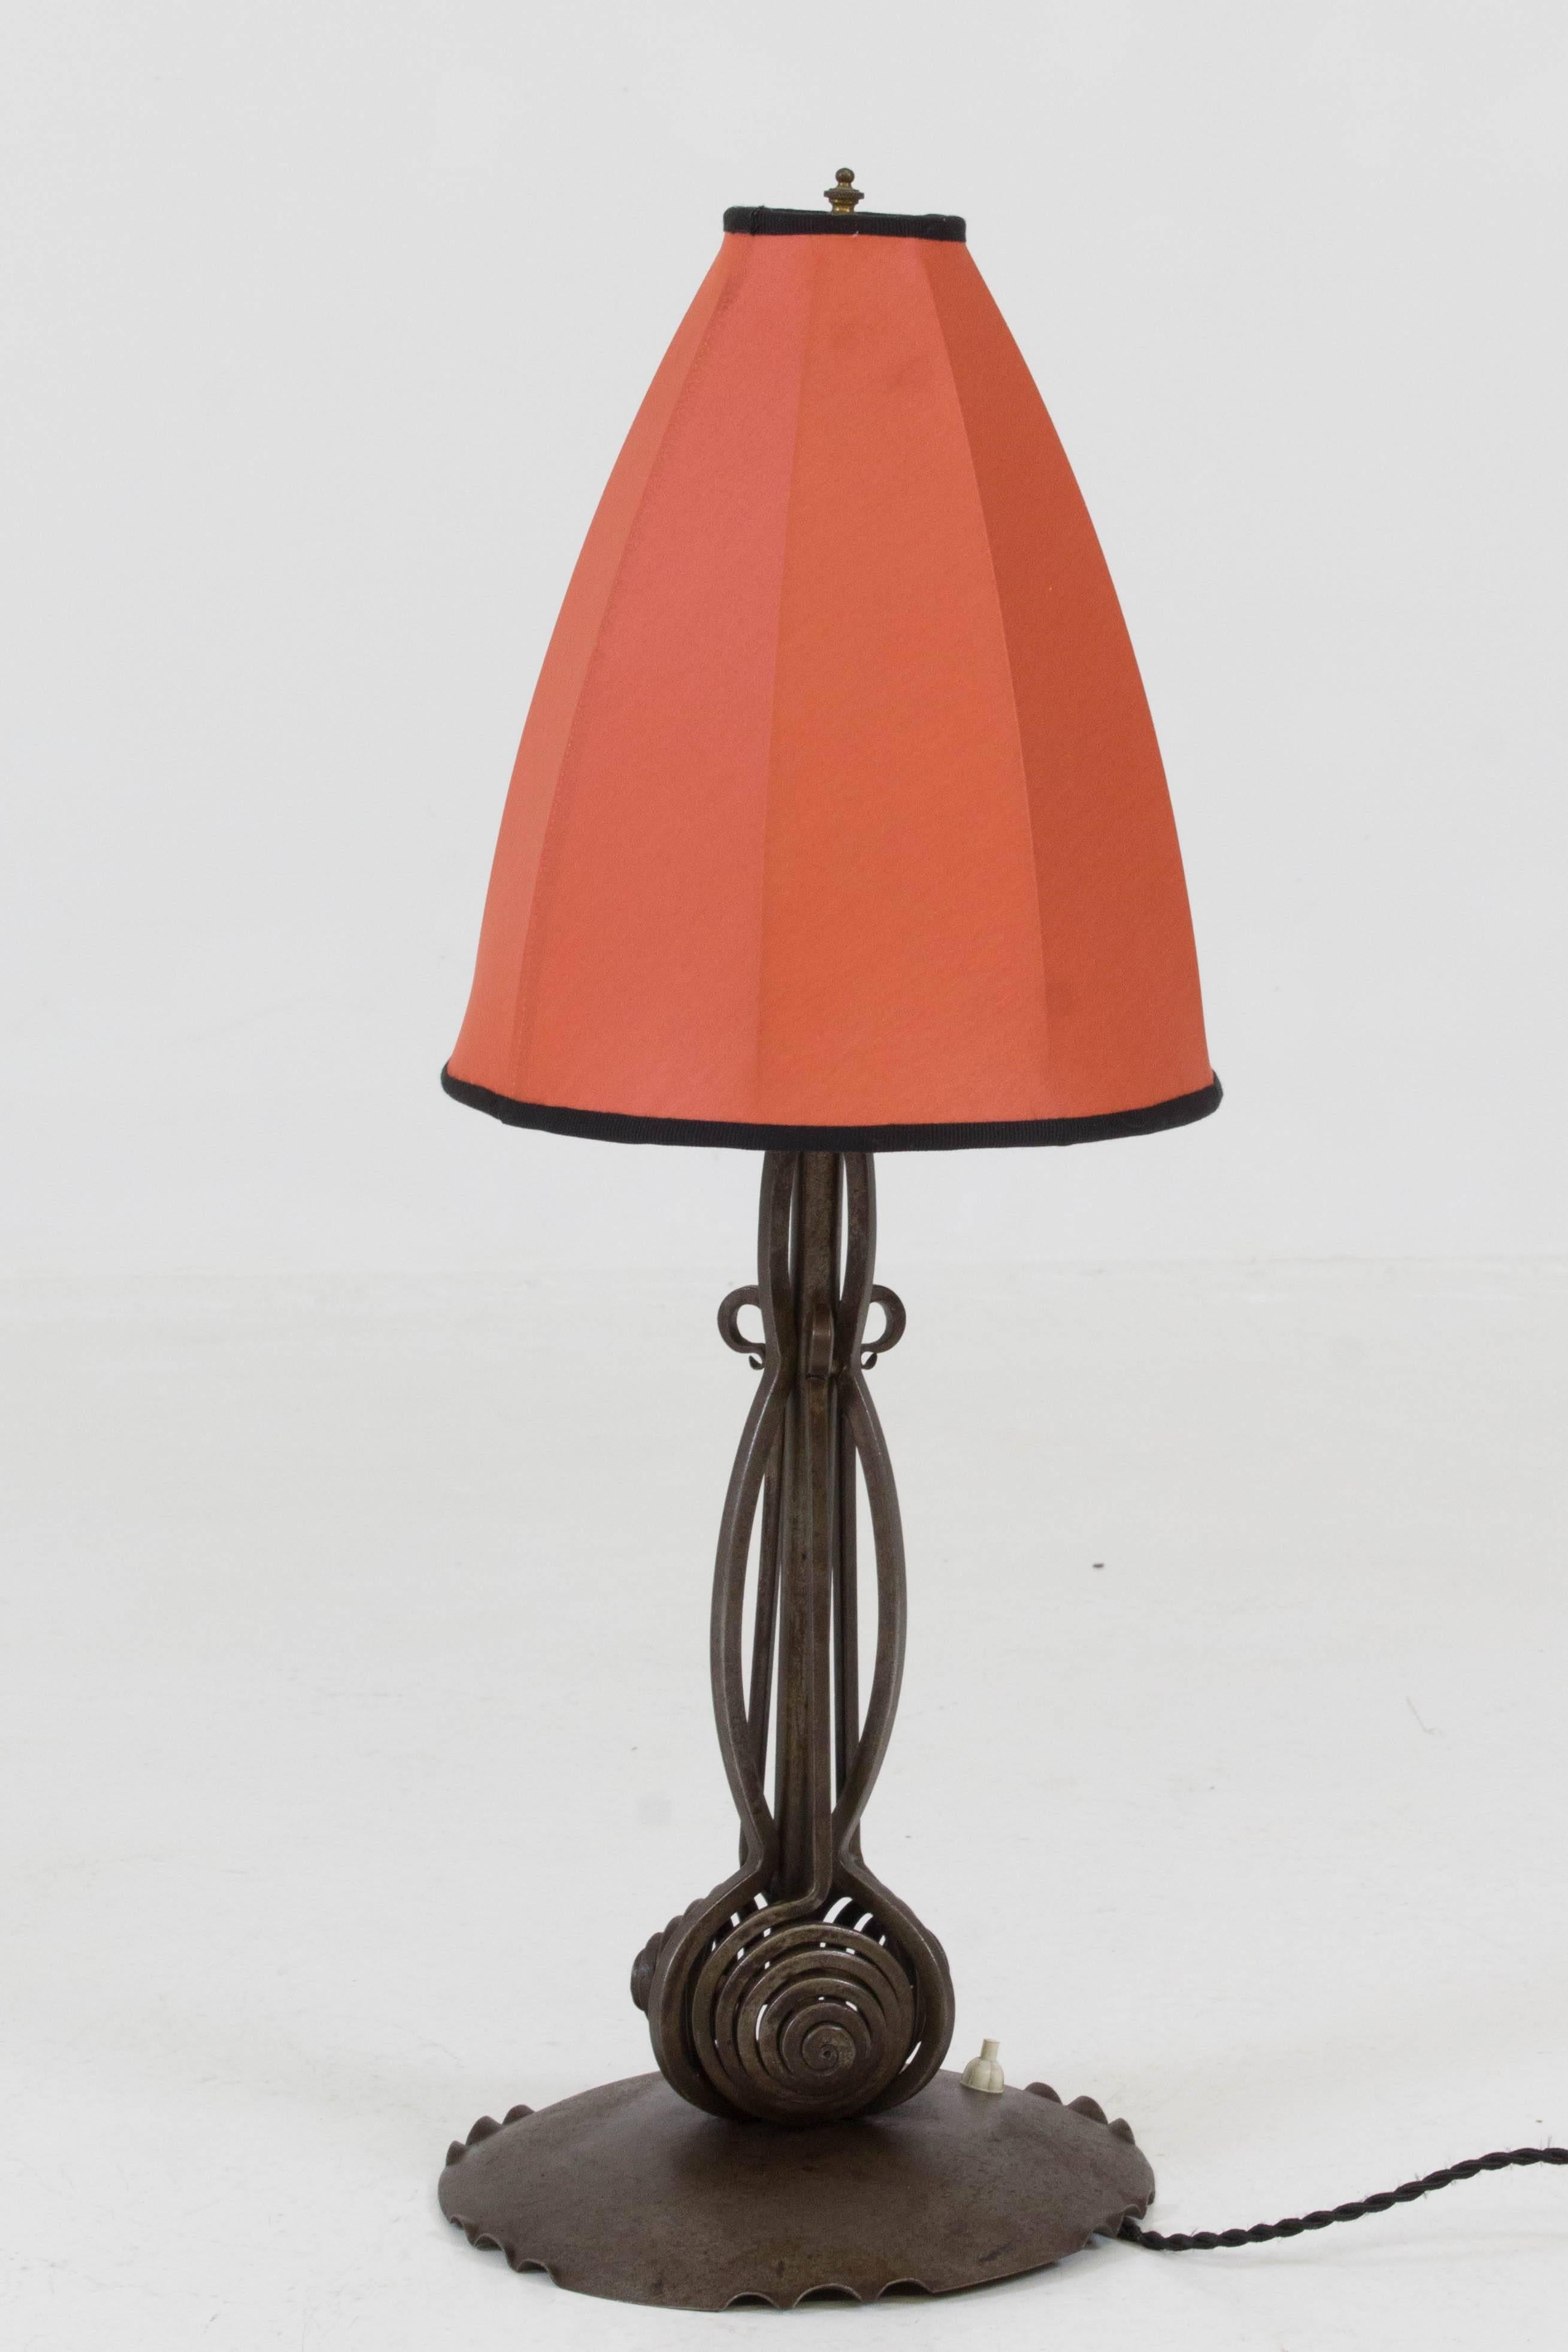 Rare Art Deco Amsterdam School Table Lamp by Winkelman & Van der Bijl, 1920s 3